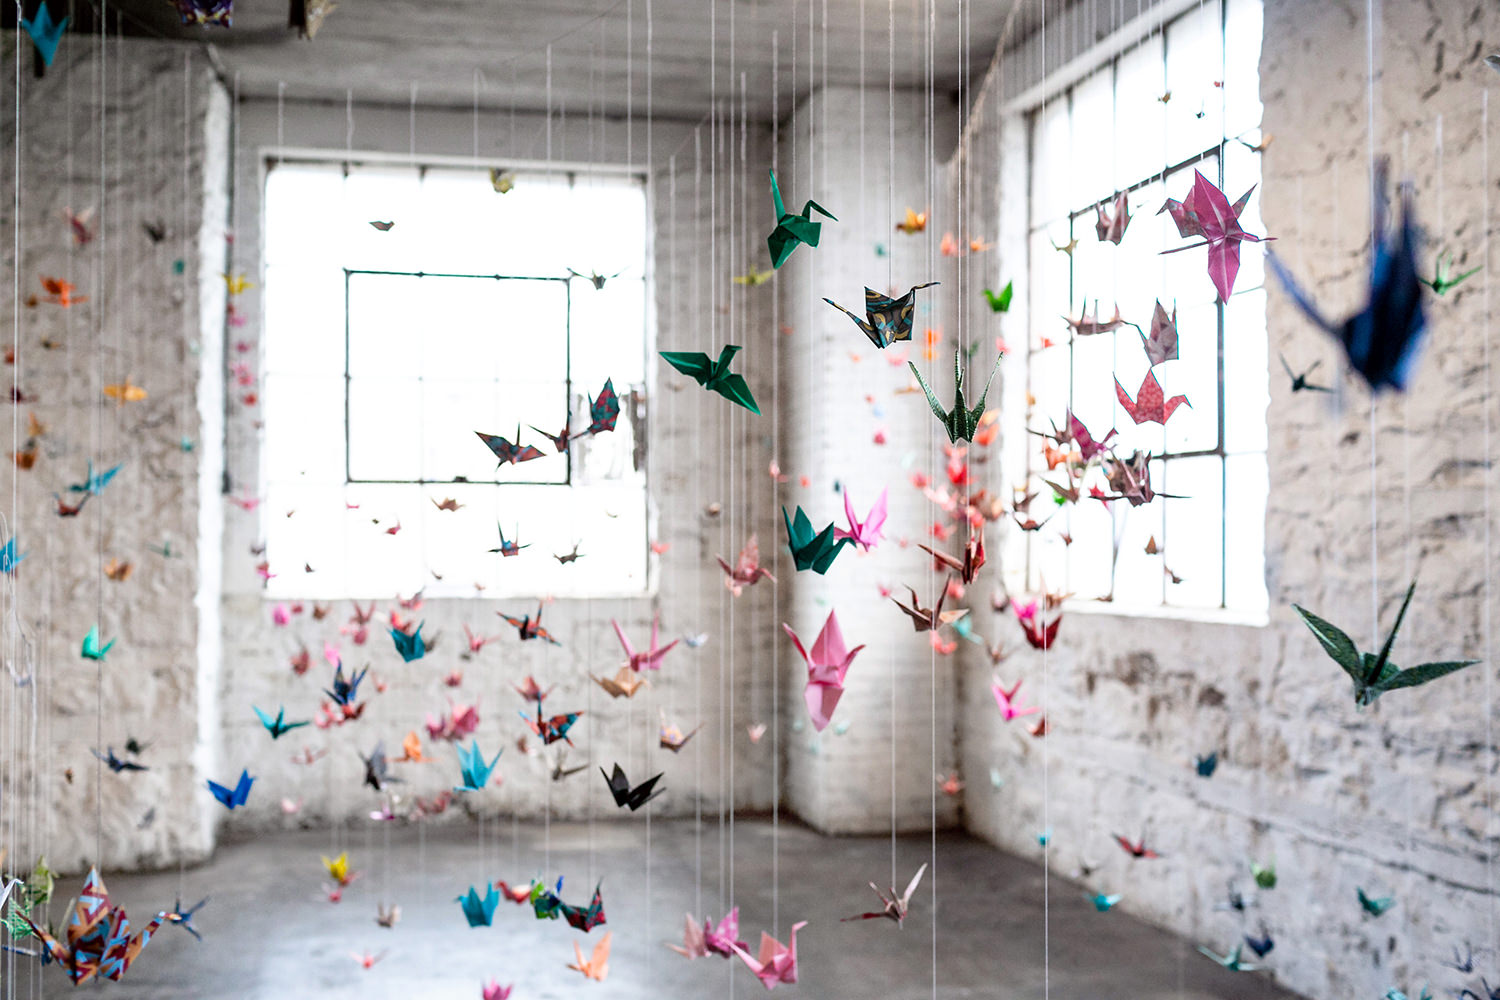 1000 Cranes for Peace-Trillium Salon Series-Likewise Studios- Origami Paper Cranes Art Installation